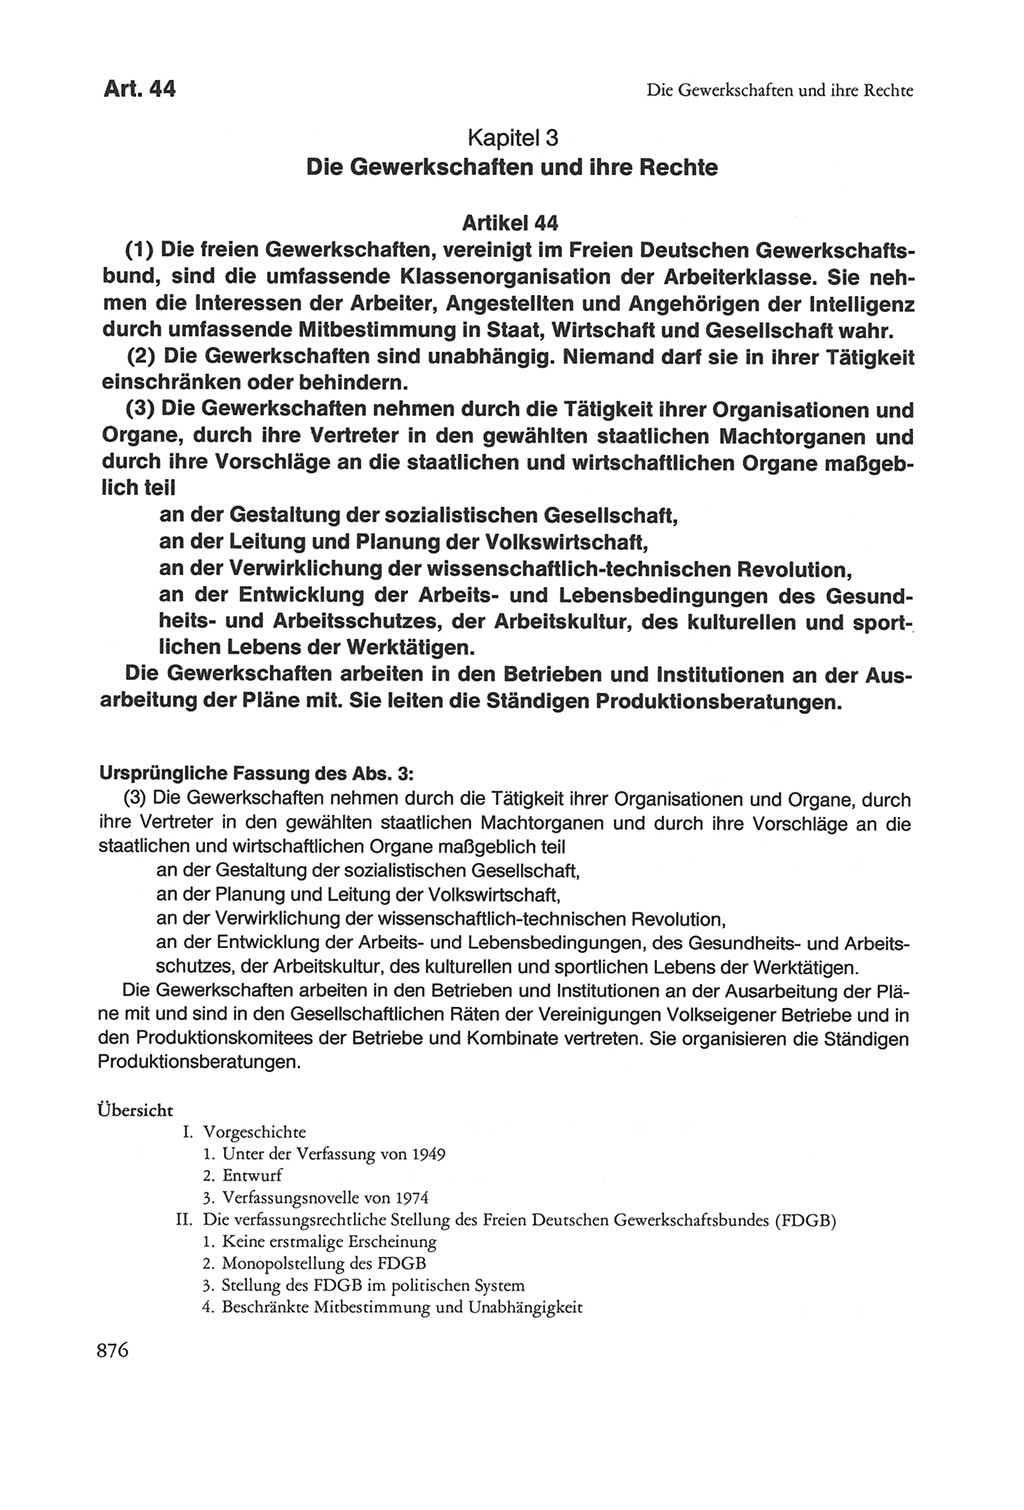 Die sozialistische Verfassung der Deutschen Demokratischen Republik (DDR), Kommentar mit einem Nachtrag 1997, Seite 876 (Soz. Verf. DDR Komm. Nachtr. 1997, S. 876)